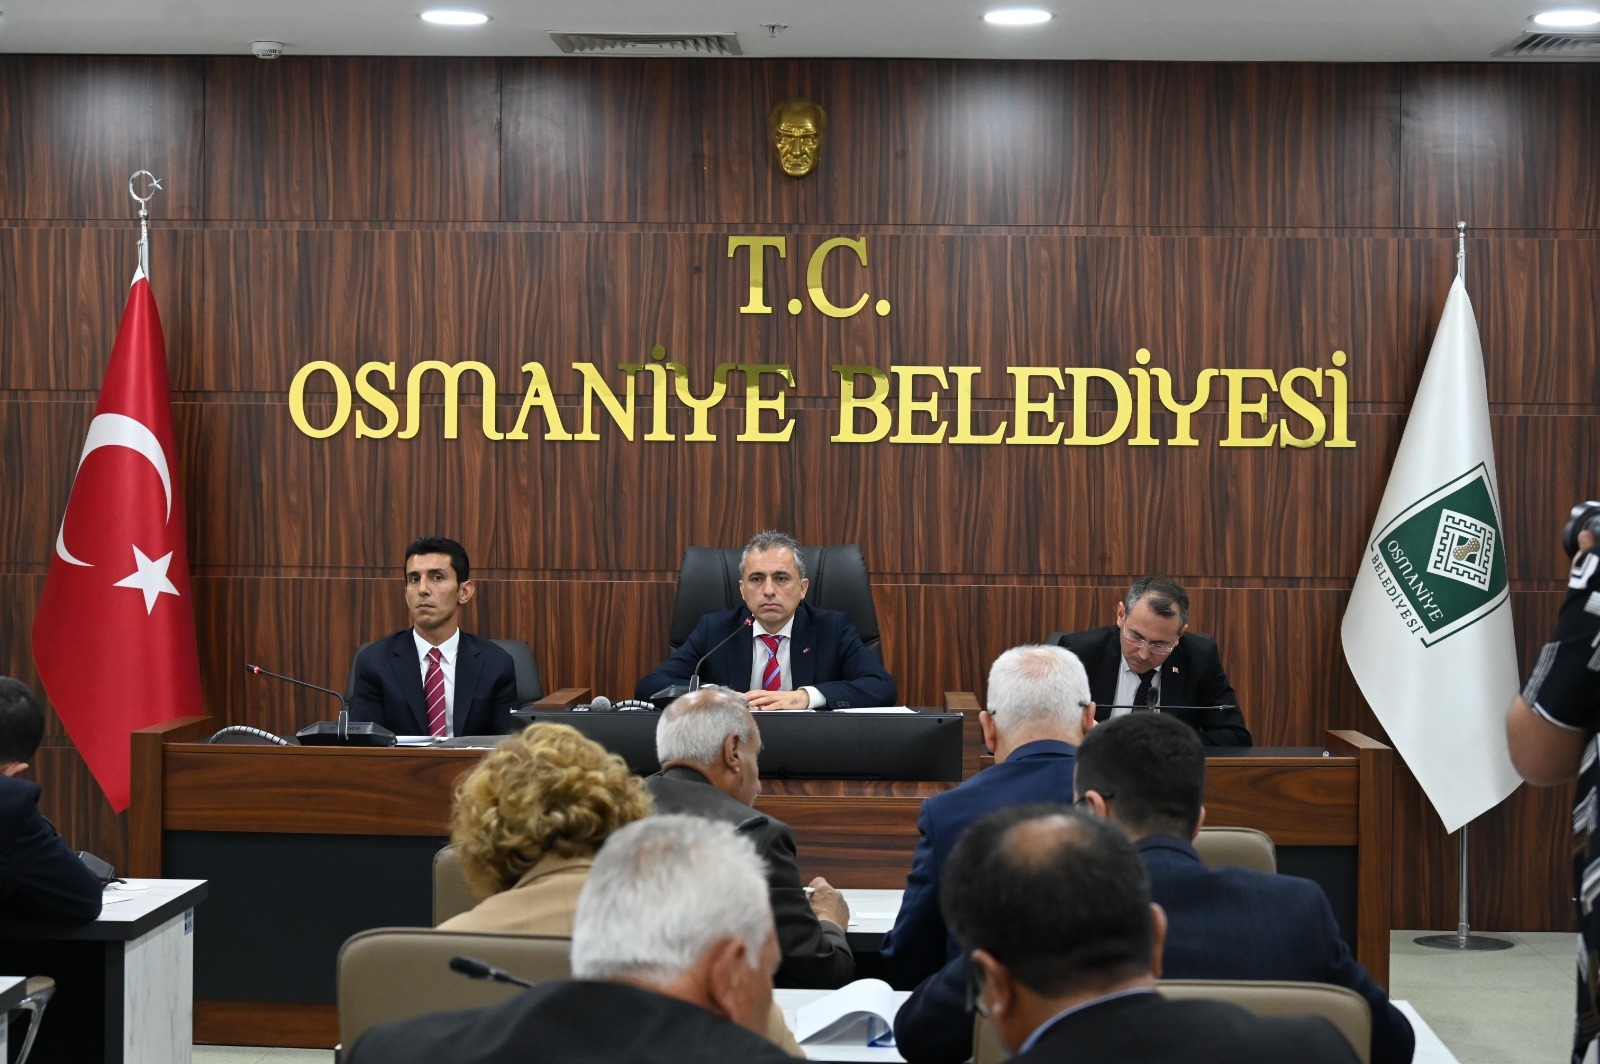 Osmaniye Belediyesi’nde Yeni Dönemin Ilk Meclis Toplantısı Yapıldı (2)